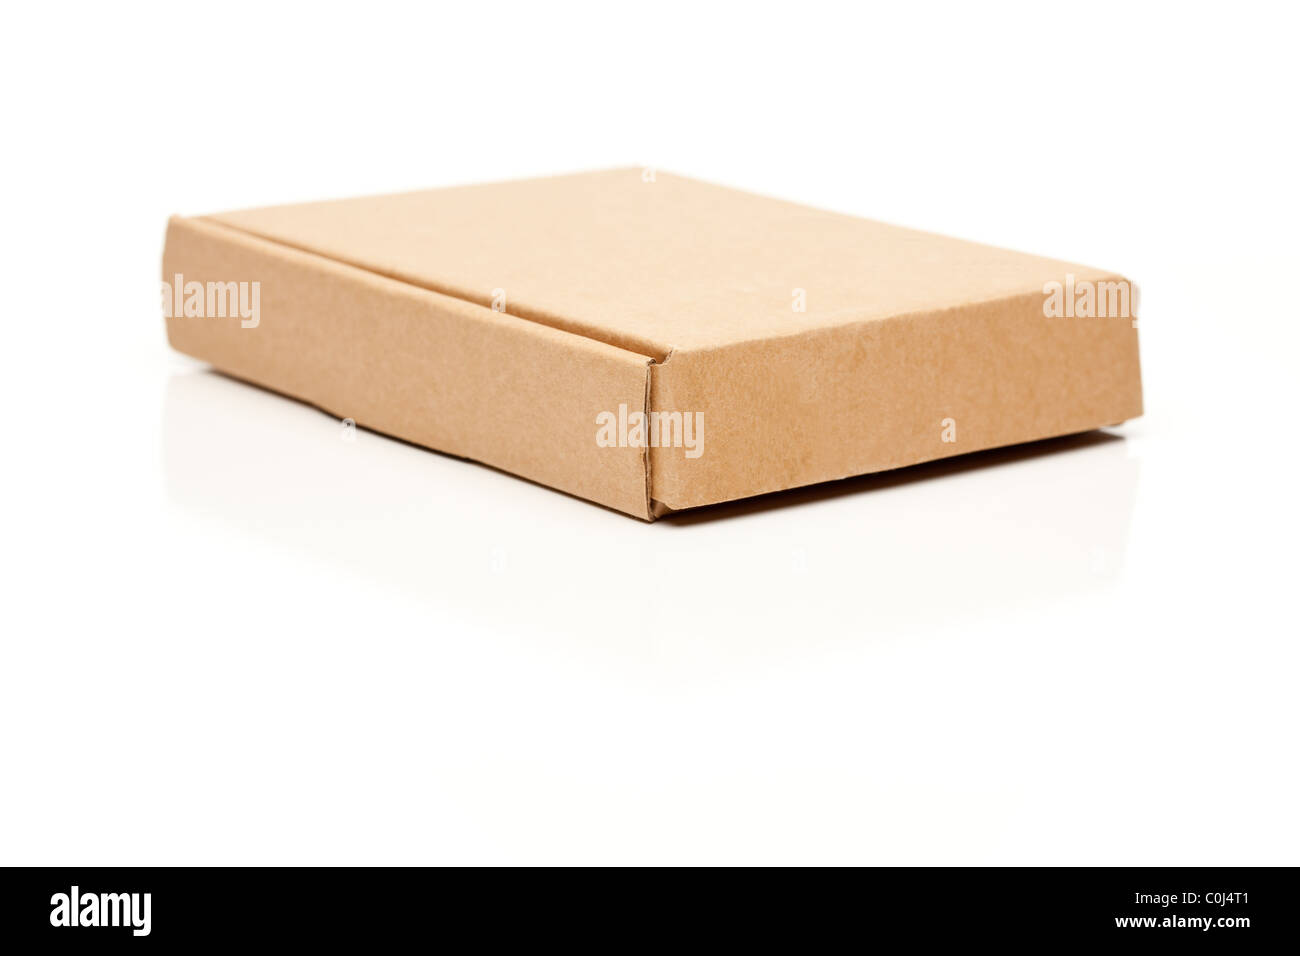 Dünnen Karton isoliert auf einem weißen Hintergrund geschlossen  Stockfotografie - Alamy